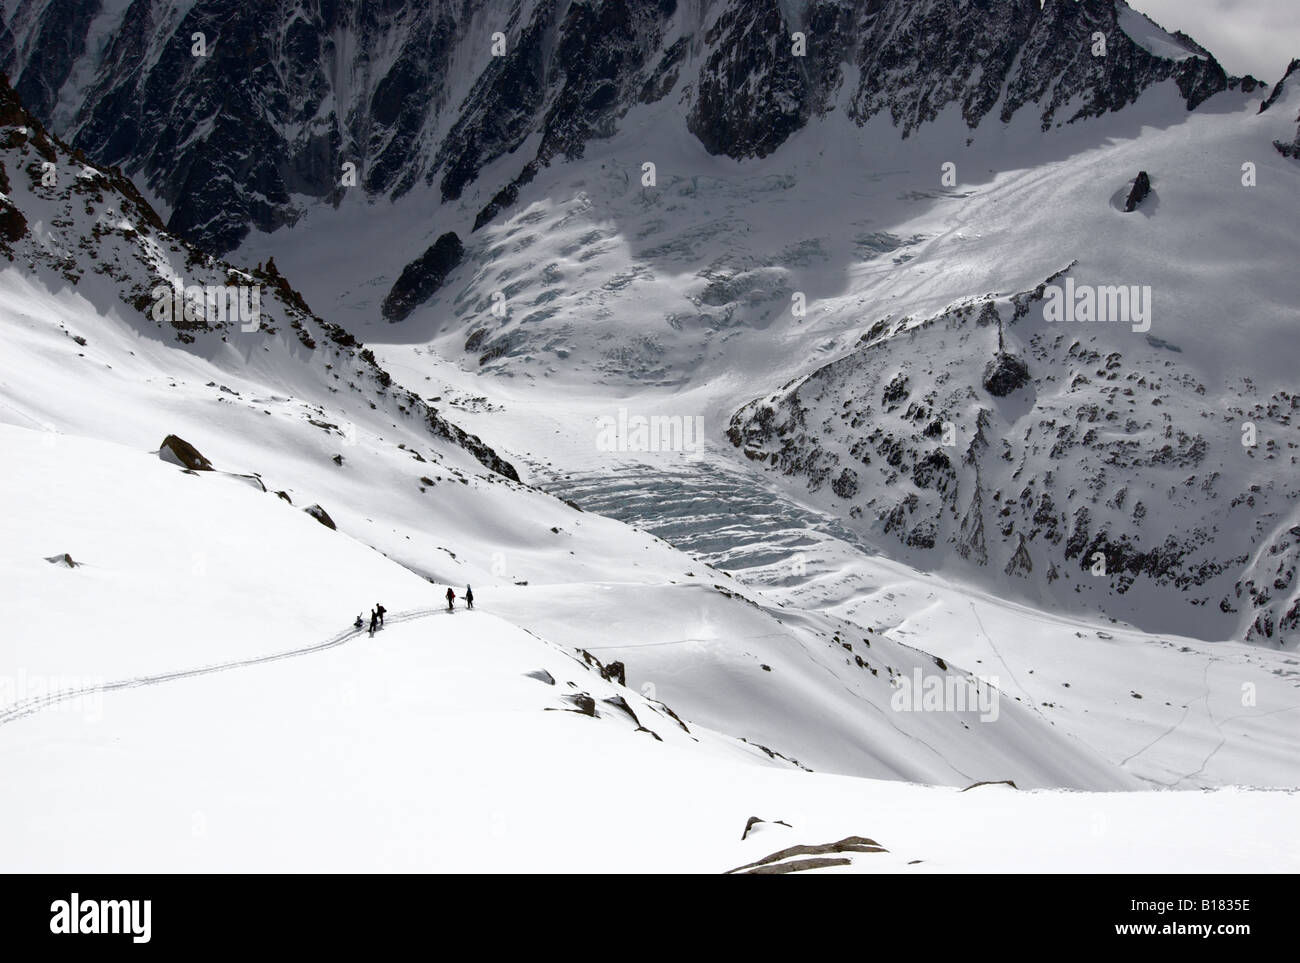 Ski de randonnée s'arrêtant pour se reposer pendant l'ascension du Glacier d'Argentière en direction du Col du Passon, vallée de Chamonix, France Banque D'Images